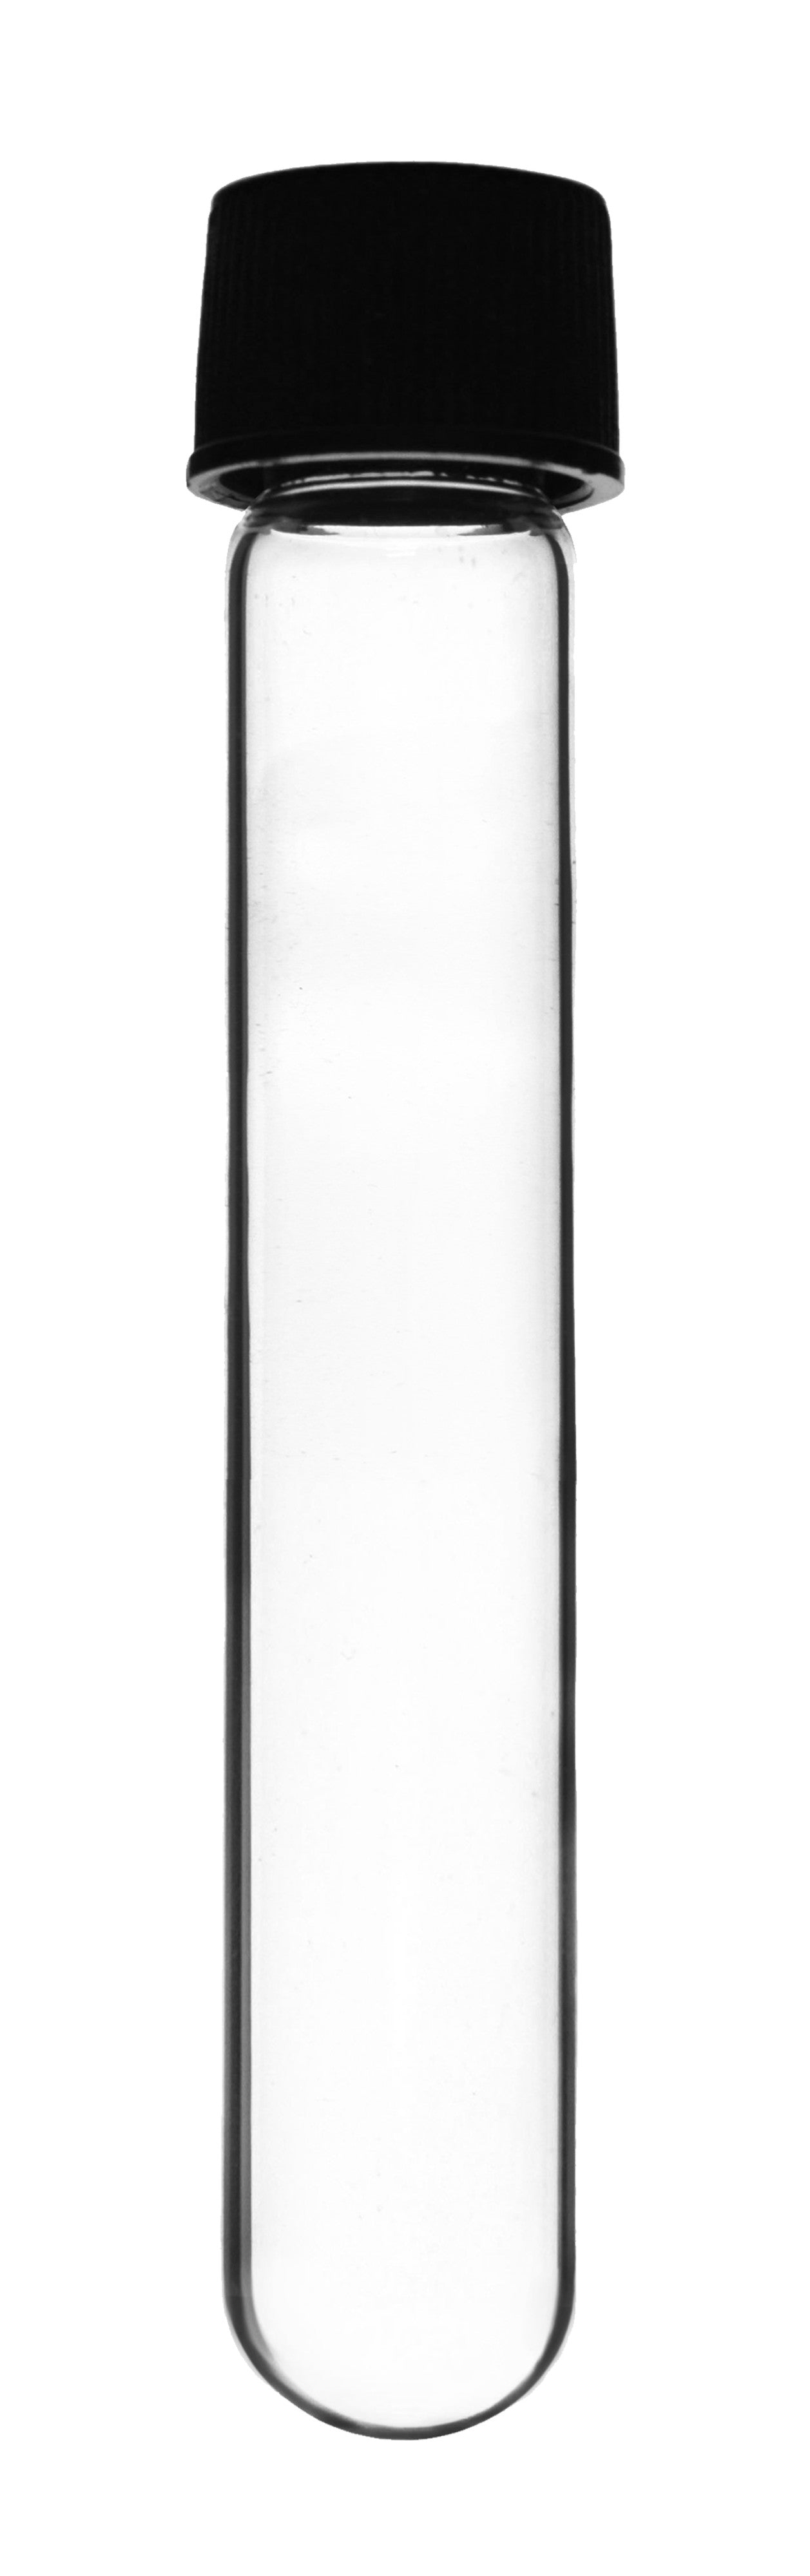 Borosilicate Glass Test Tubes, 30 ml, Round Bottom with Screw Cap